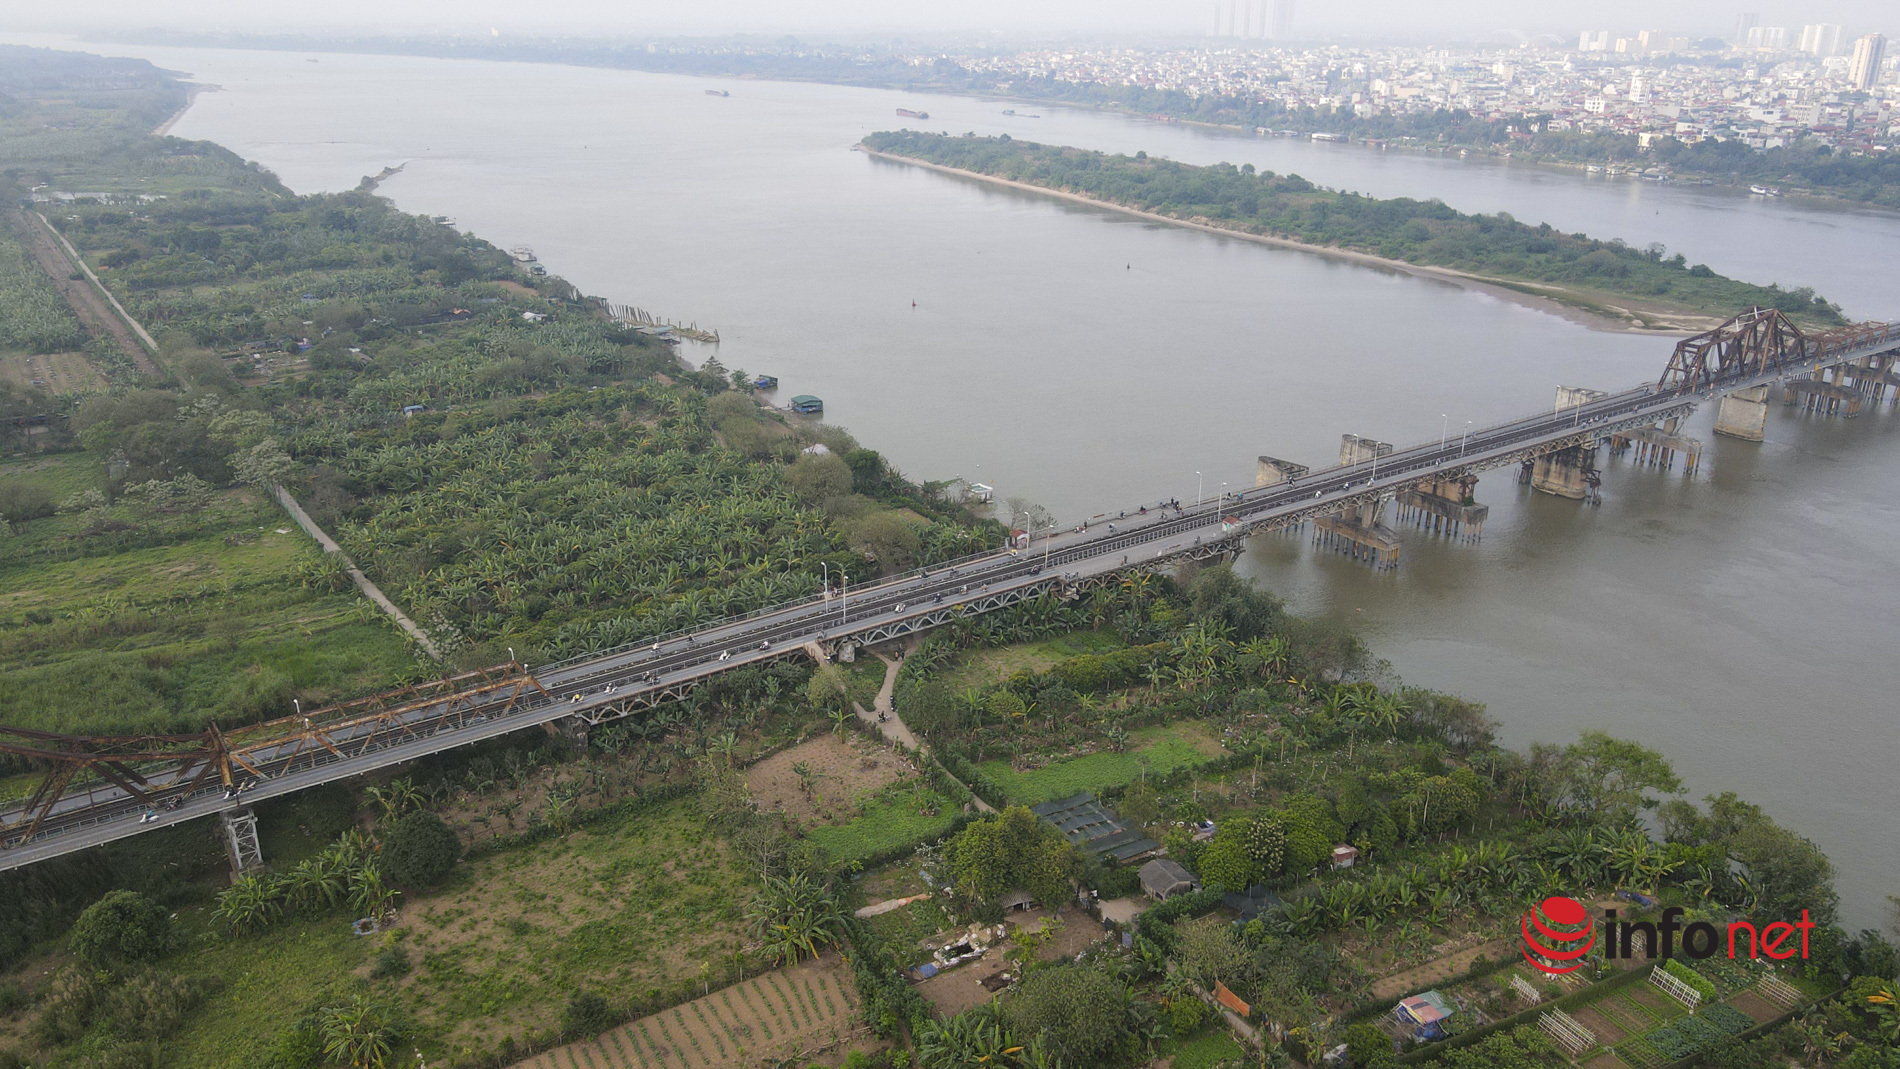 Hà Nội: Toàn cảnh bãi giữa sông Hồng nên thơ được đề xuất cải tạo thành công viên văn hóa - Ảnh 15.